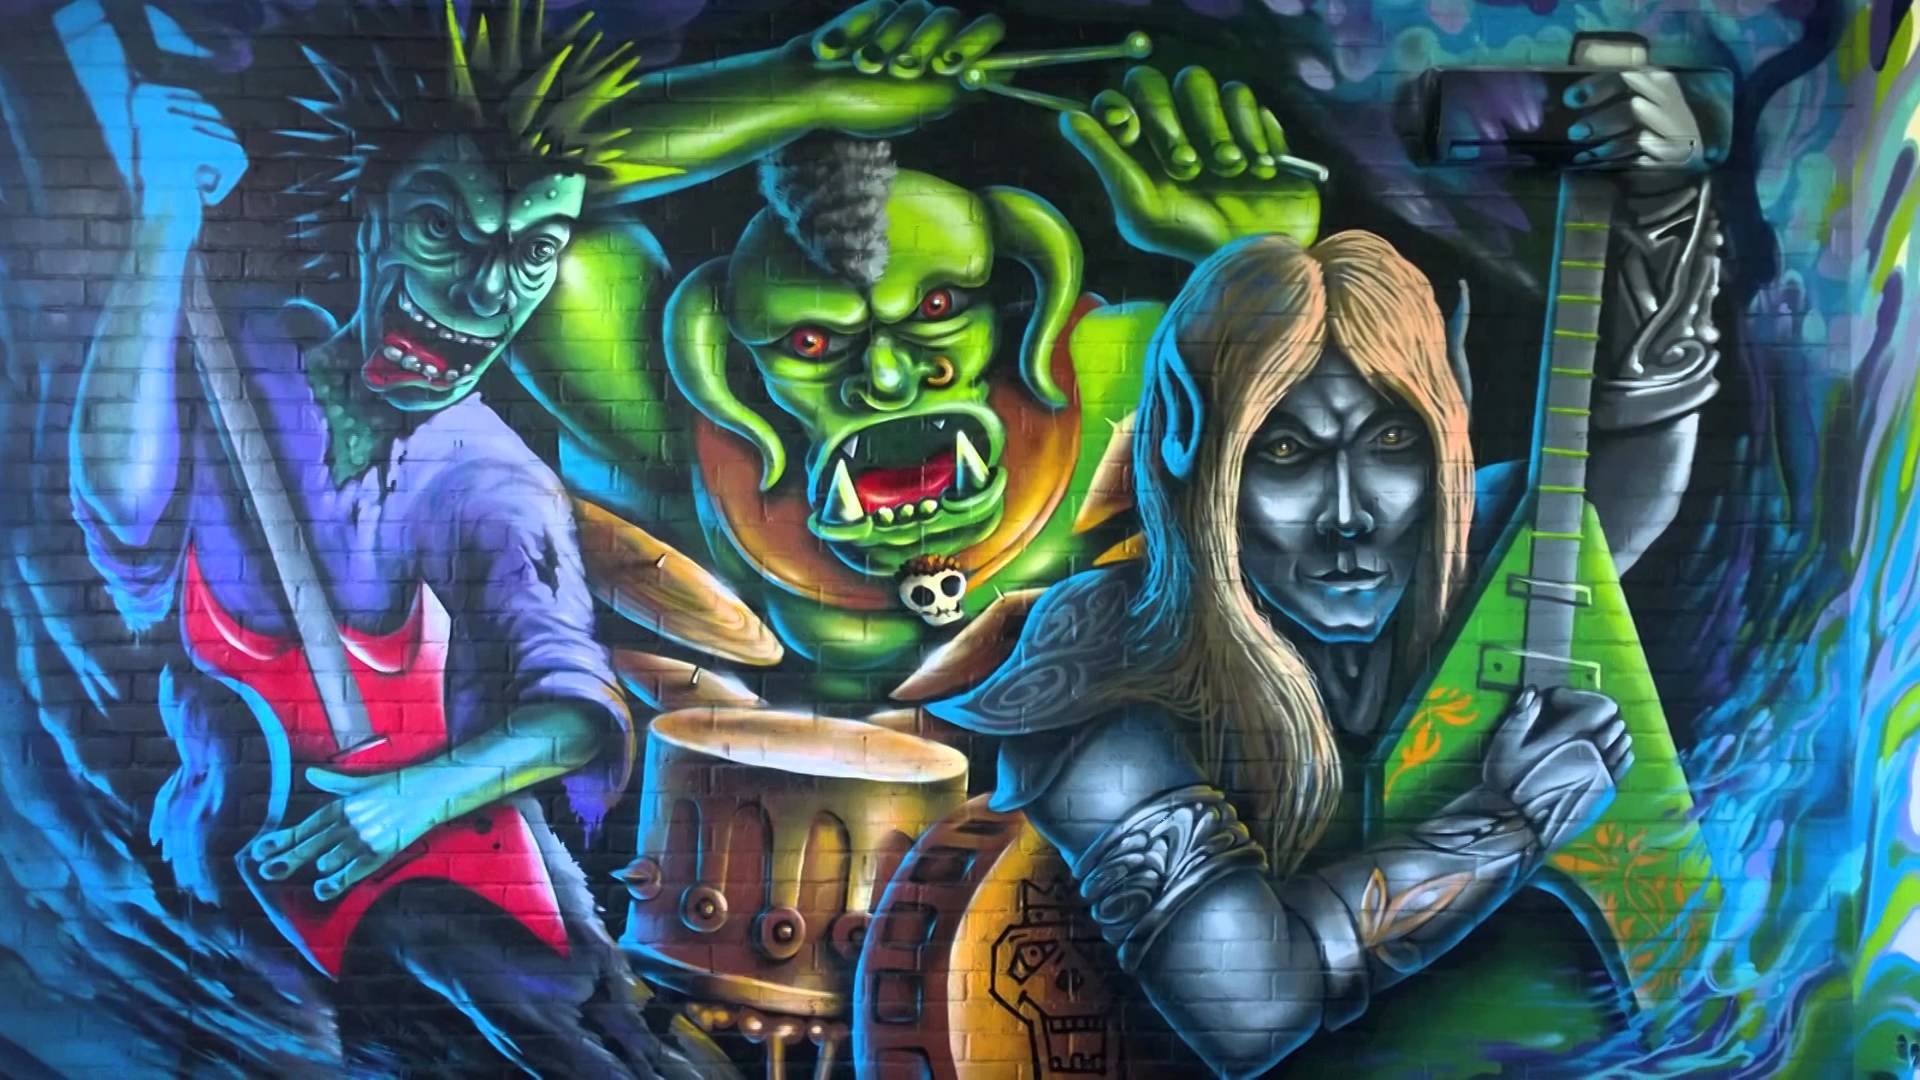 graffiti wallpapers 4k,graffiti,art,street art,mural,fictional character